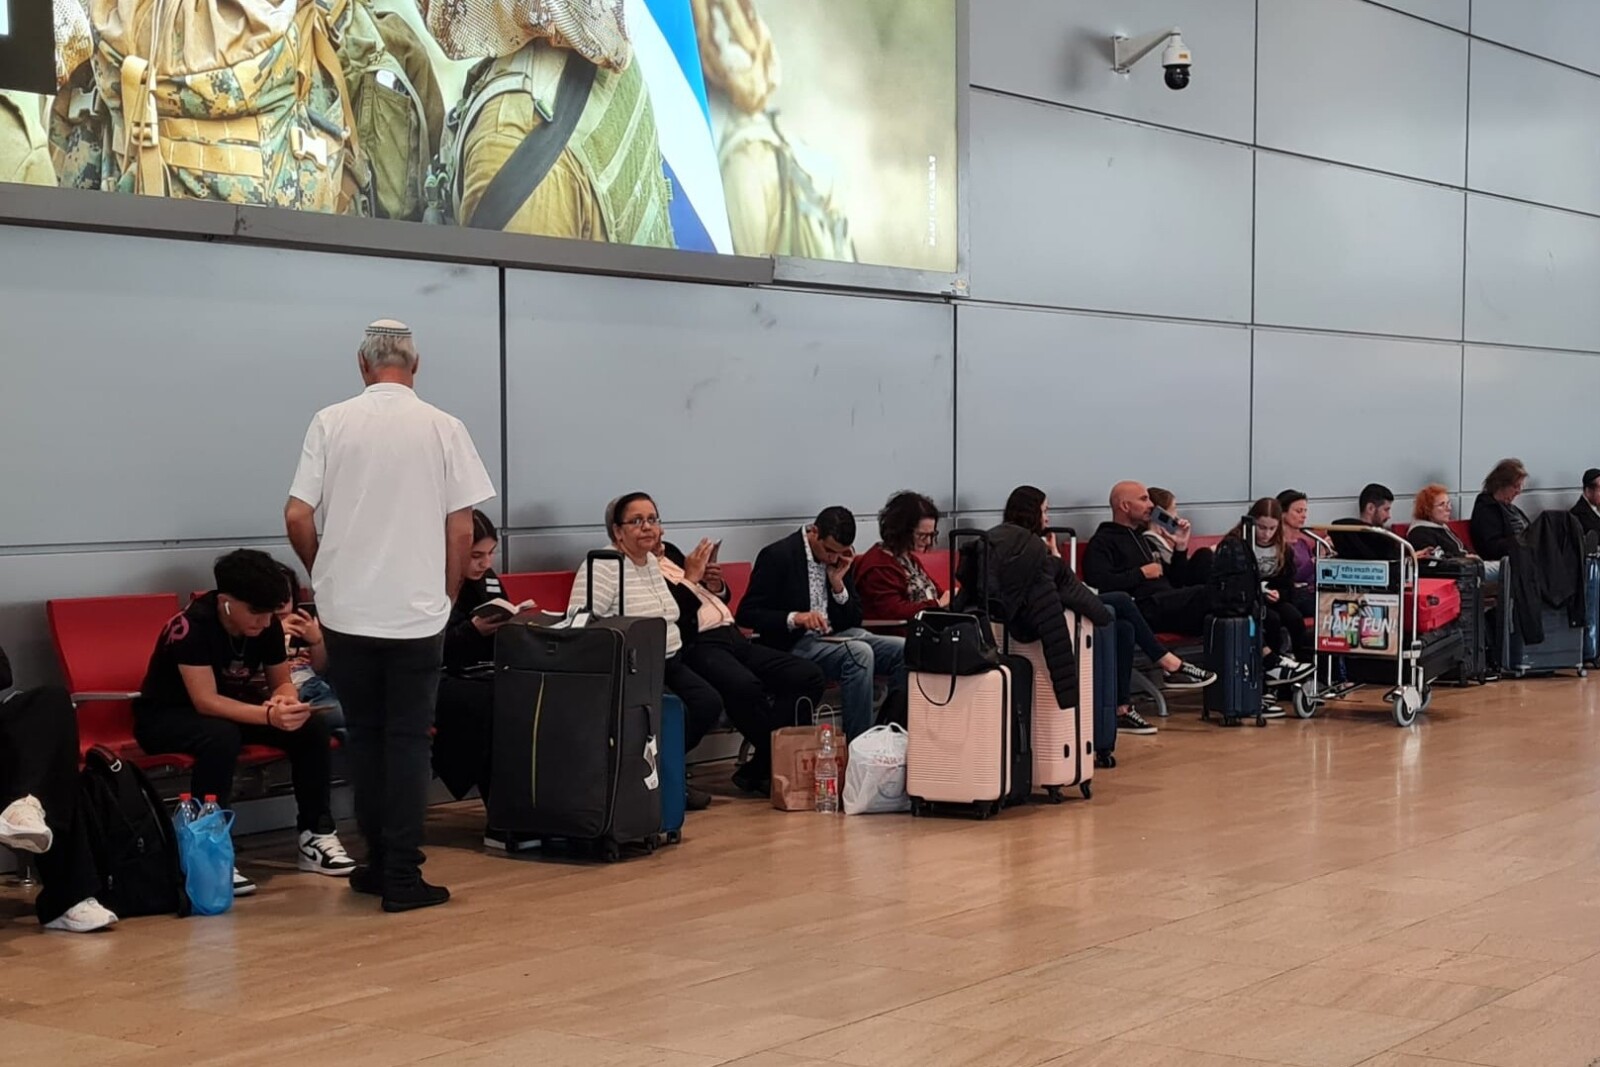 ממתינים למידע בשדה התעופה (צילום: הדס יום טוב)